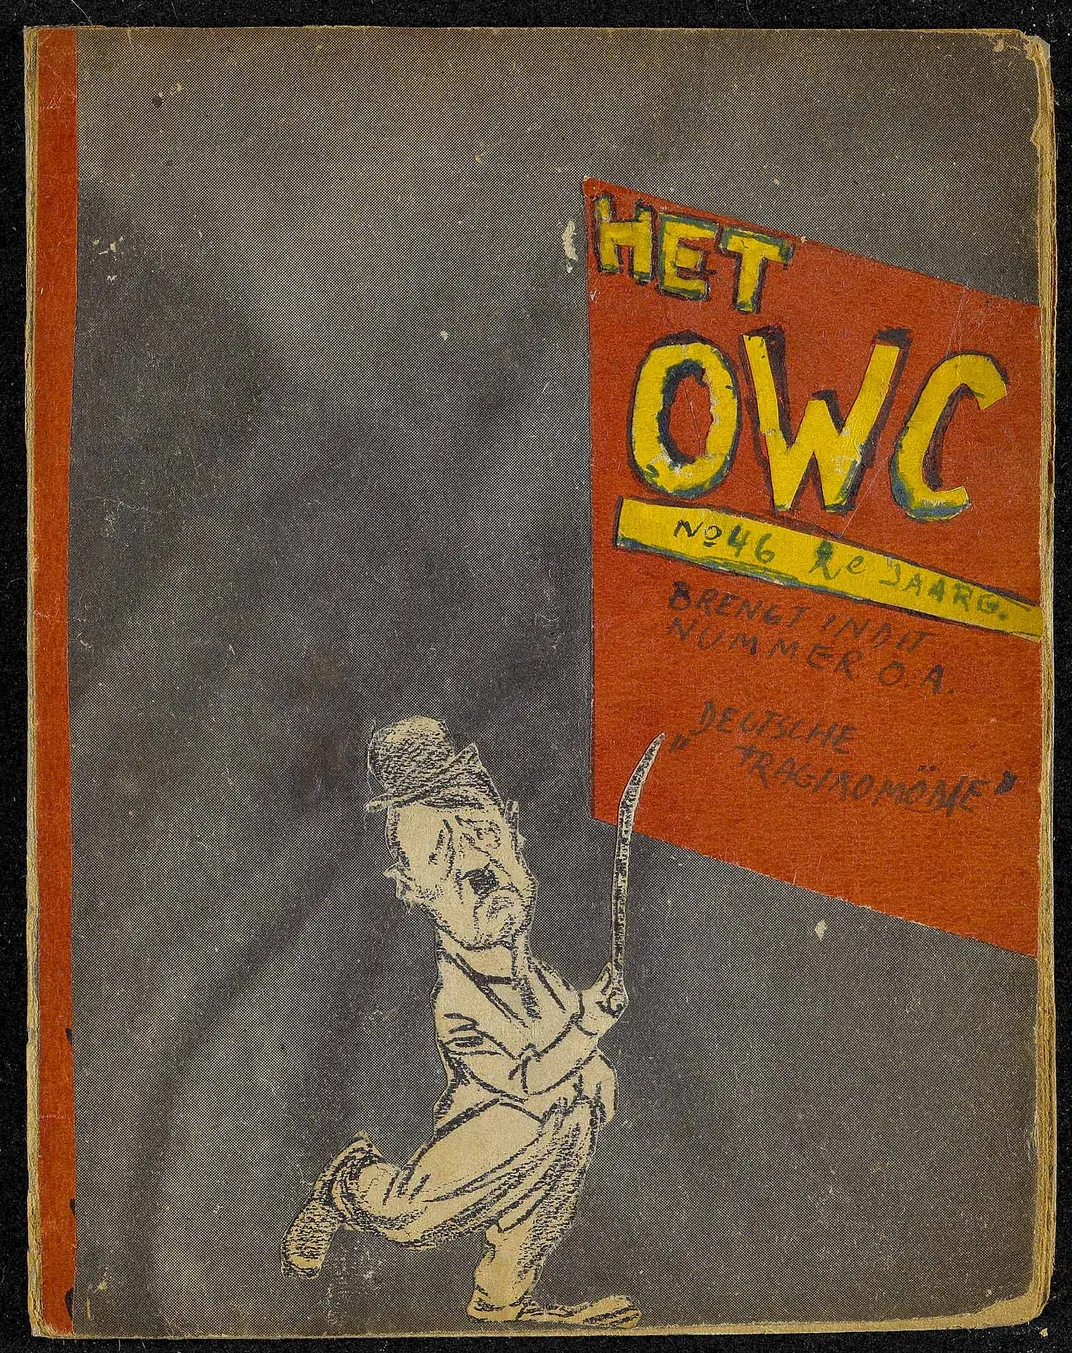 September 9, 1944 issue